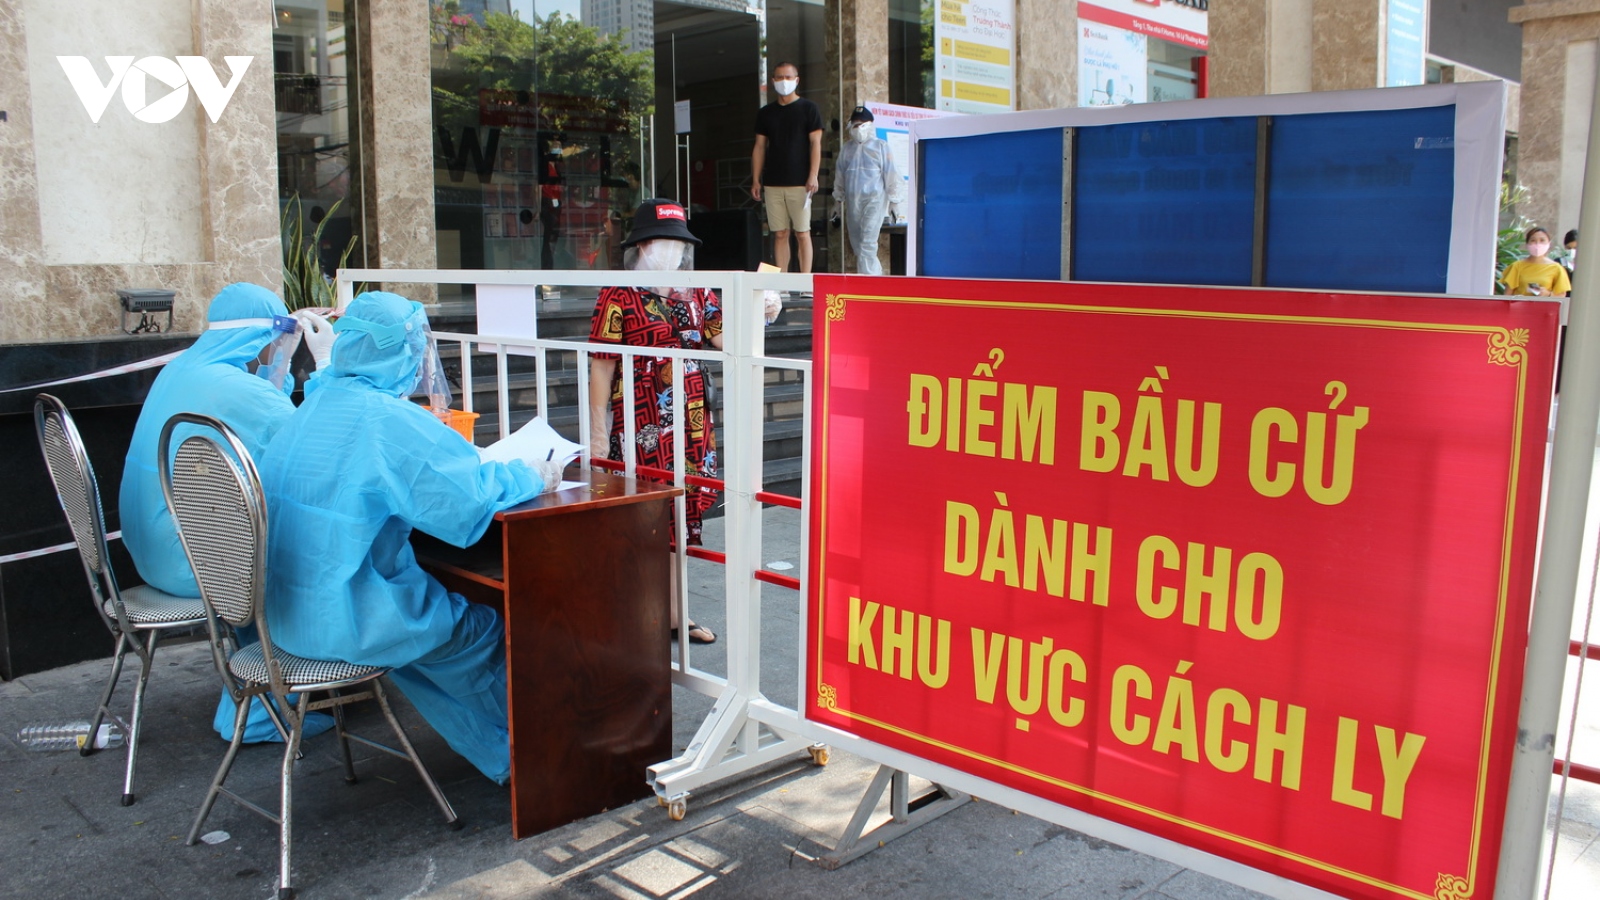 Ngày bầu cử đặc biệt trong các khu cách ly ở Đà Nẵng